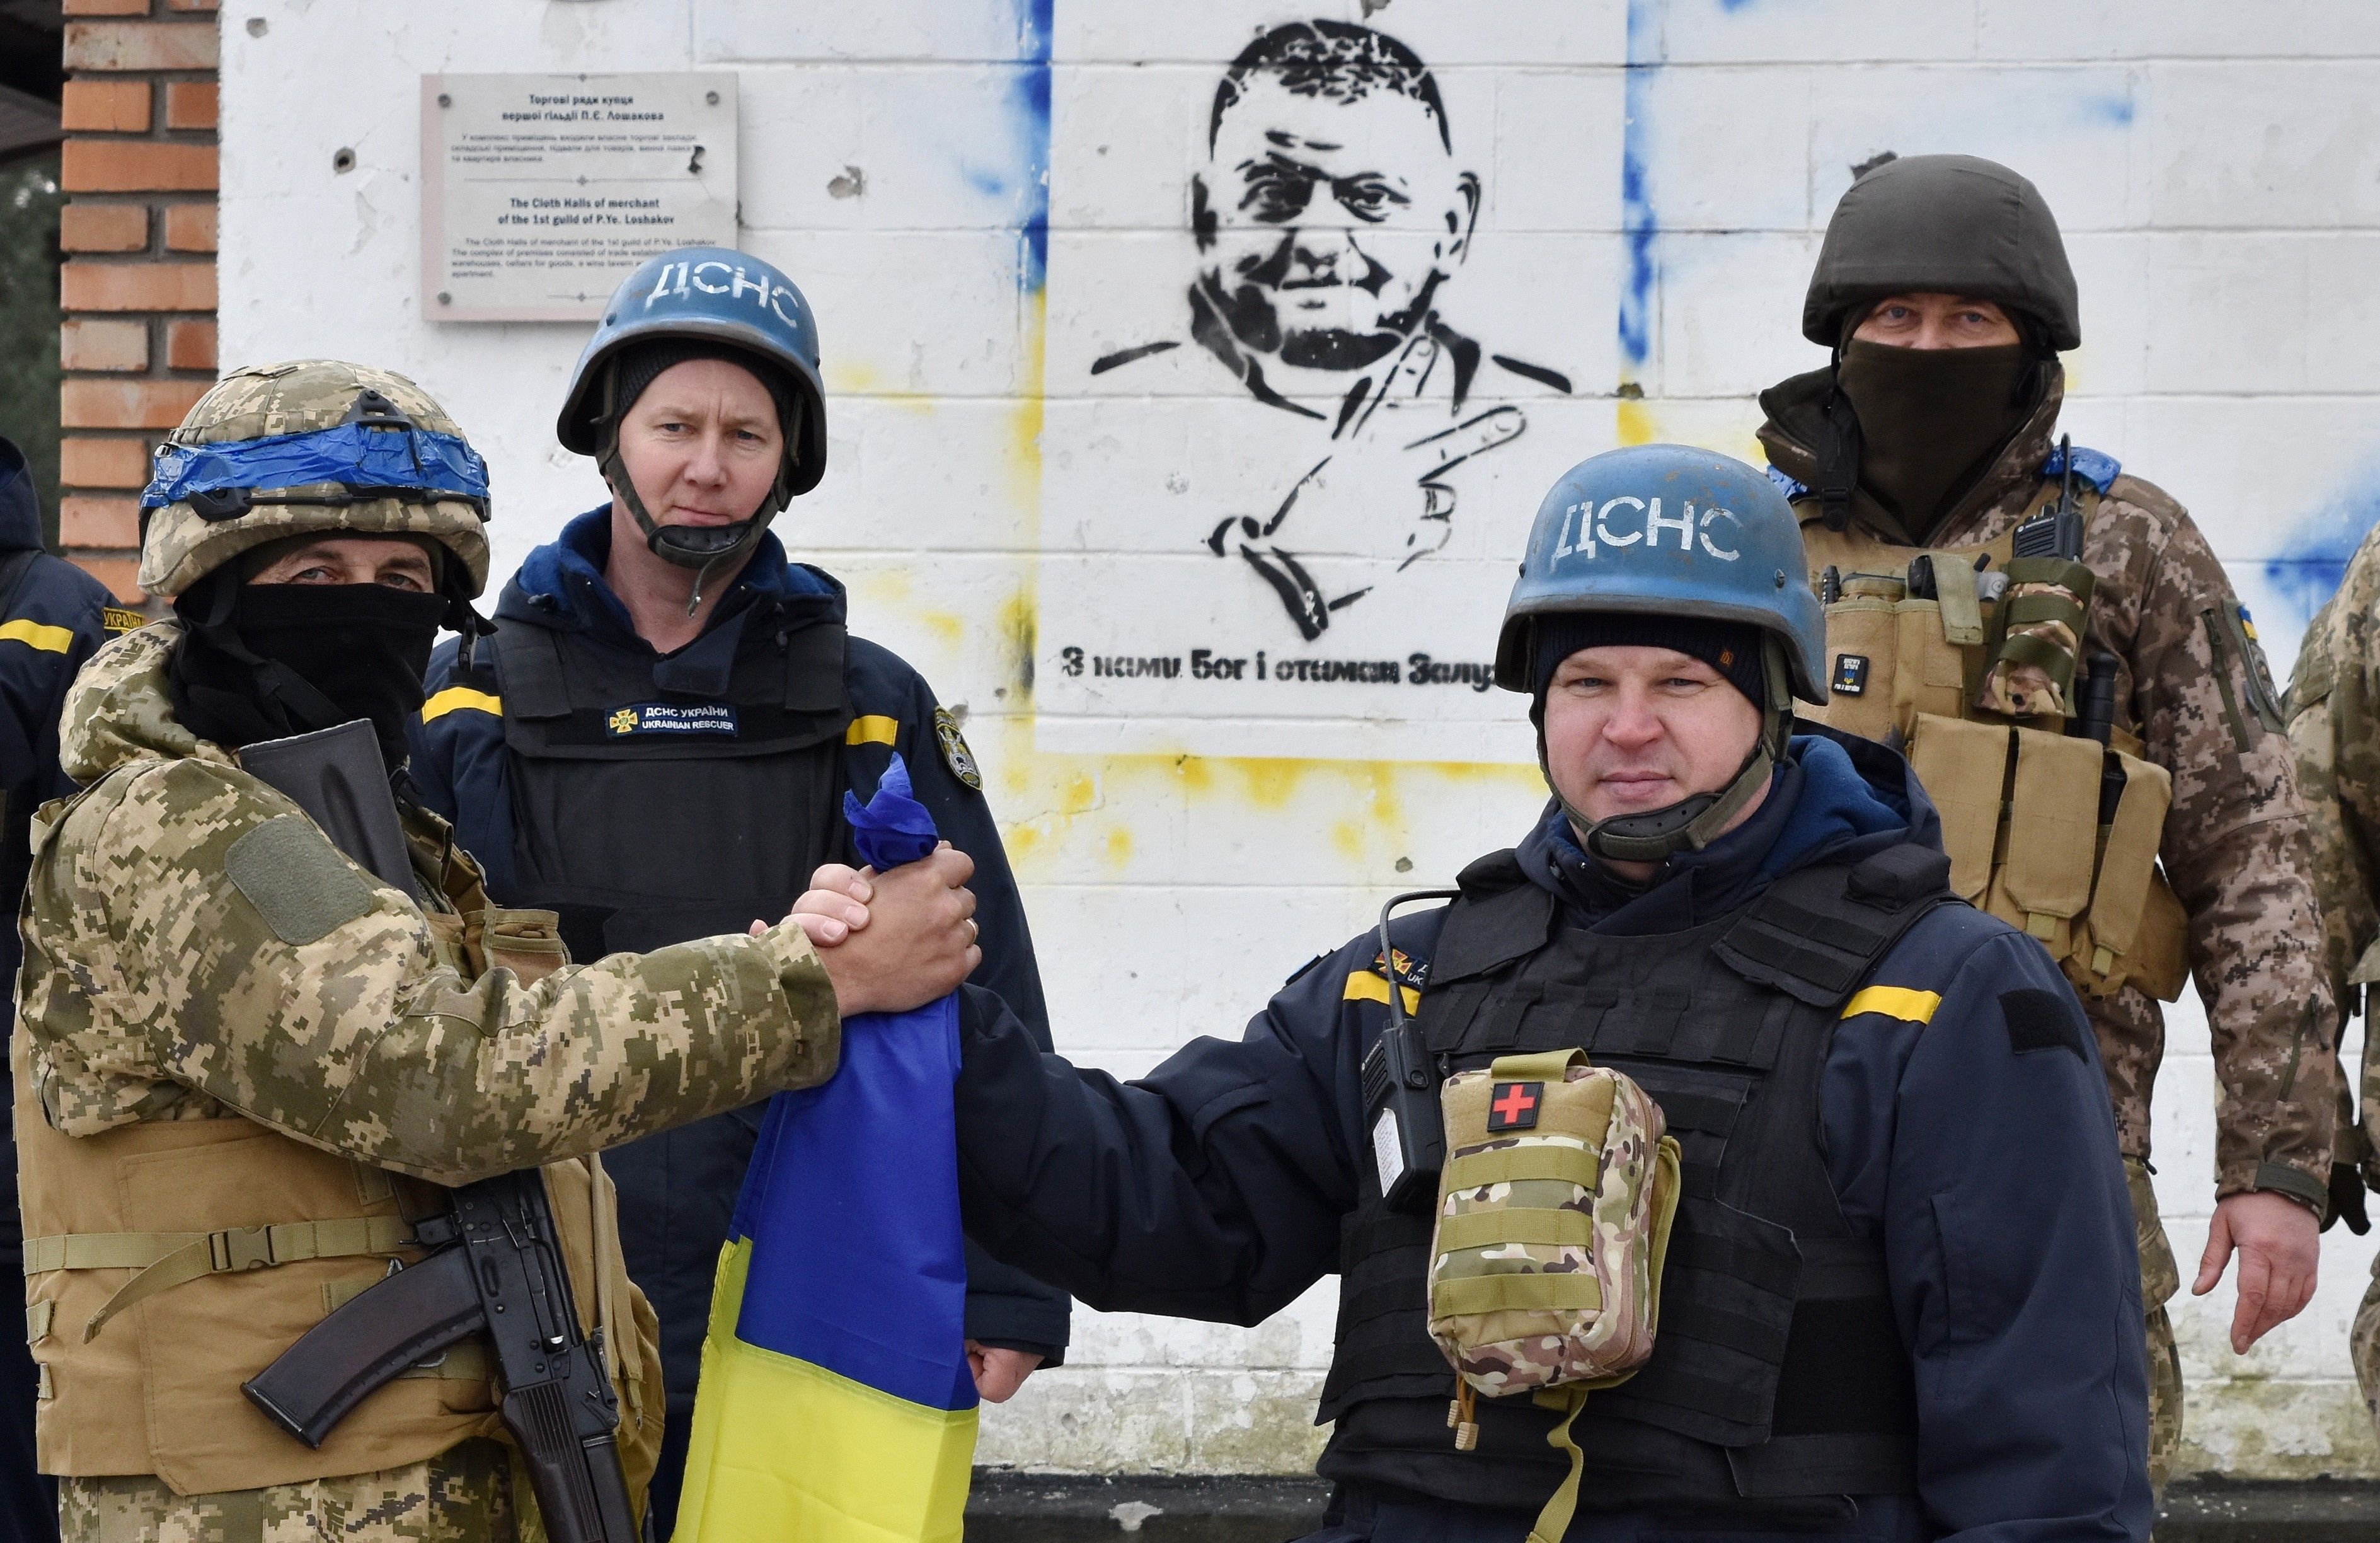 Zaluzhny firing not even a band-aid as Ukraine strategy bleeds out